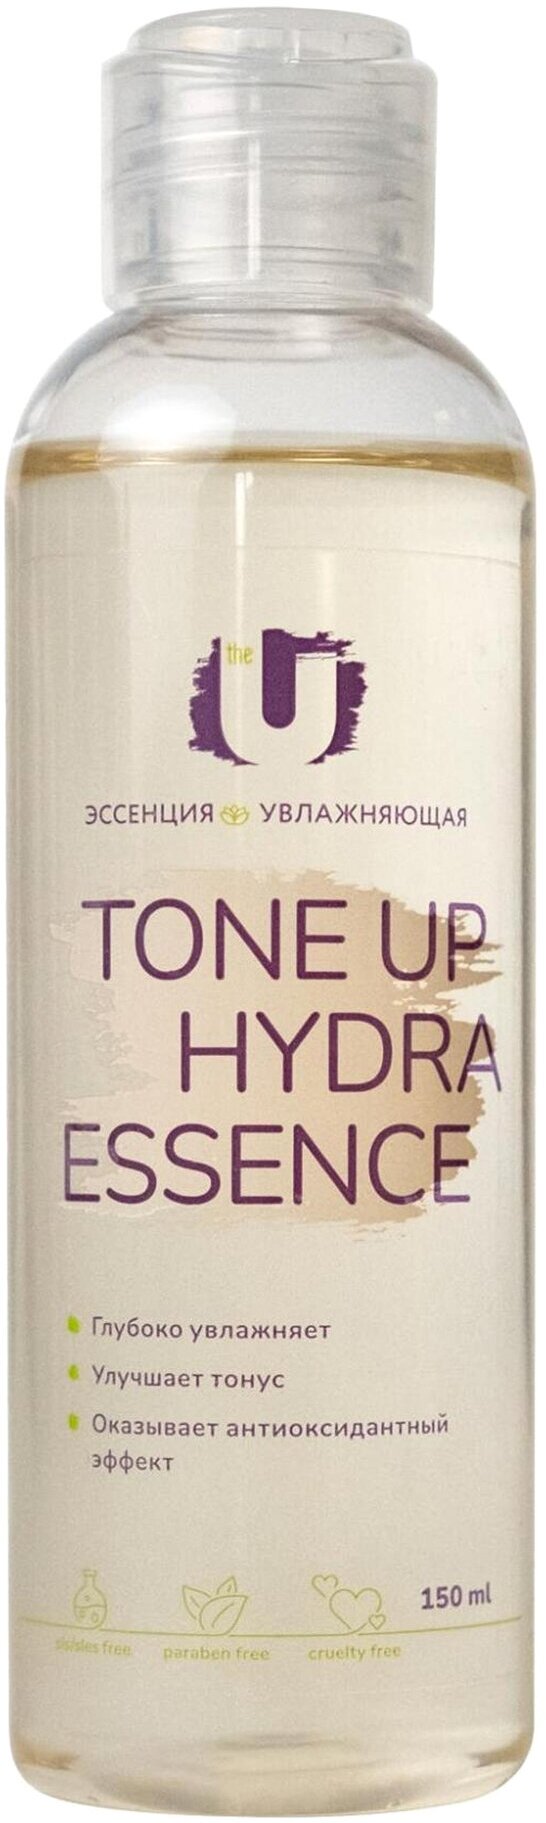 THE U Увлажняющая эссенция с гиалуроновой кислотой и экстрактом одуванчика Tone Up Hydra Essence, 145 мл